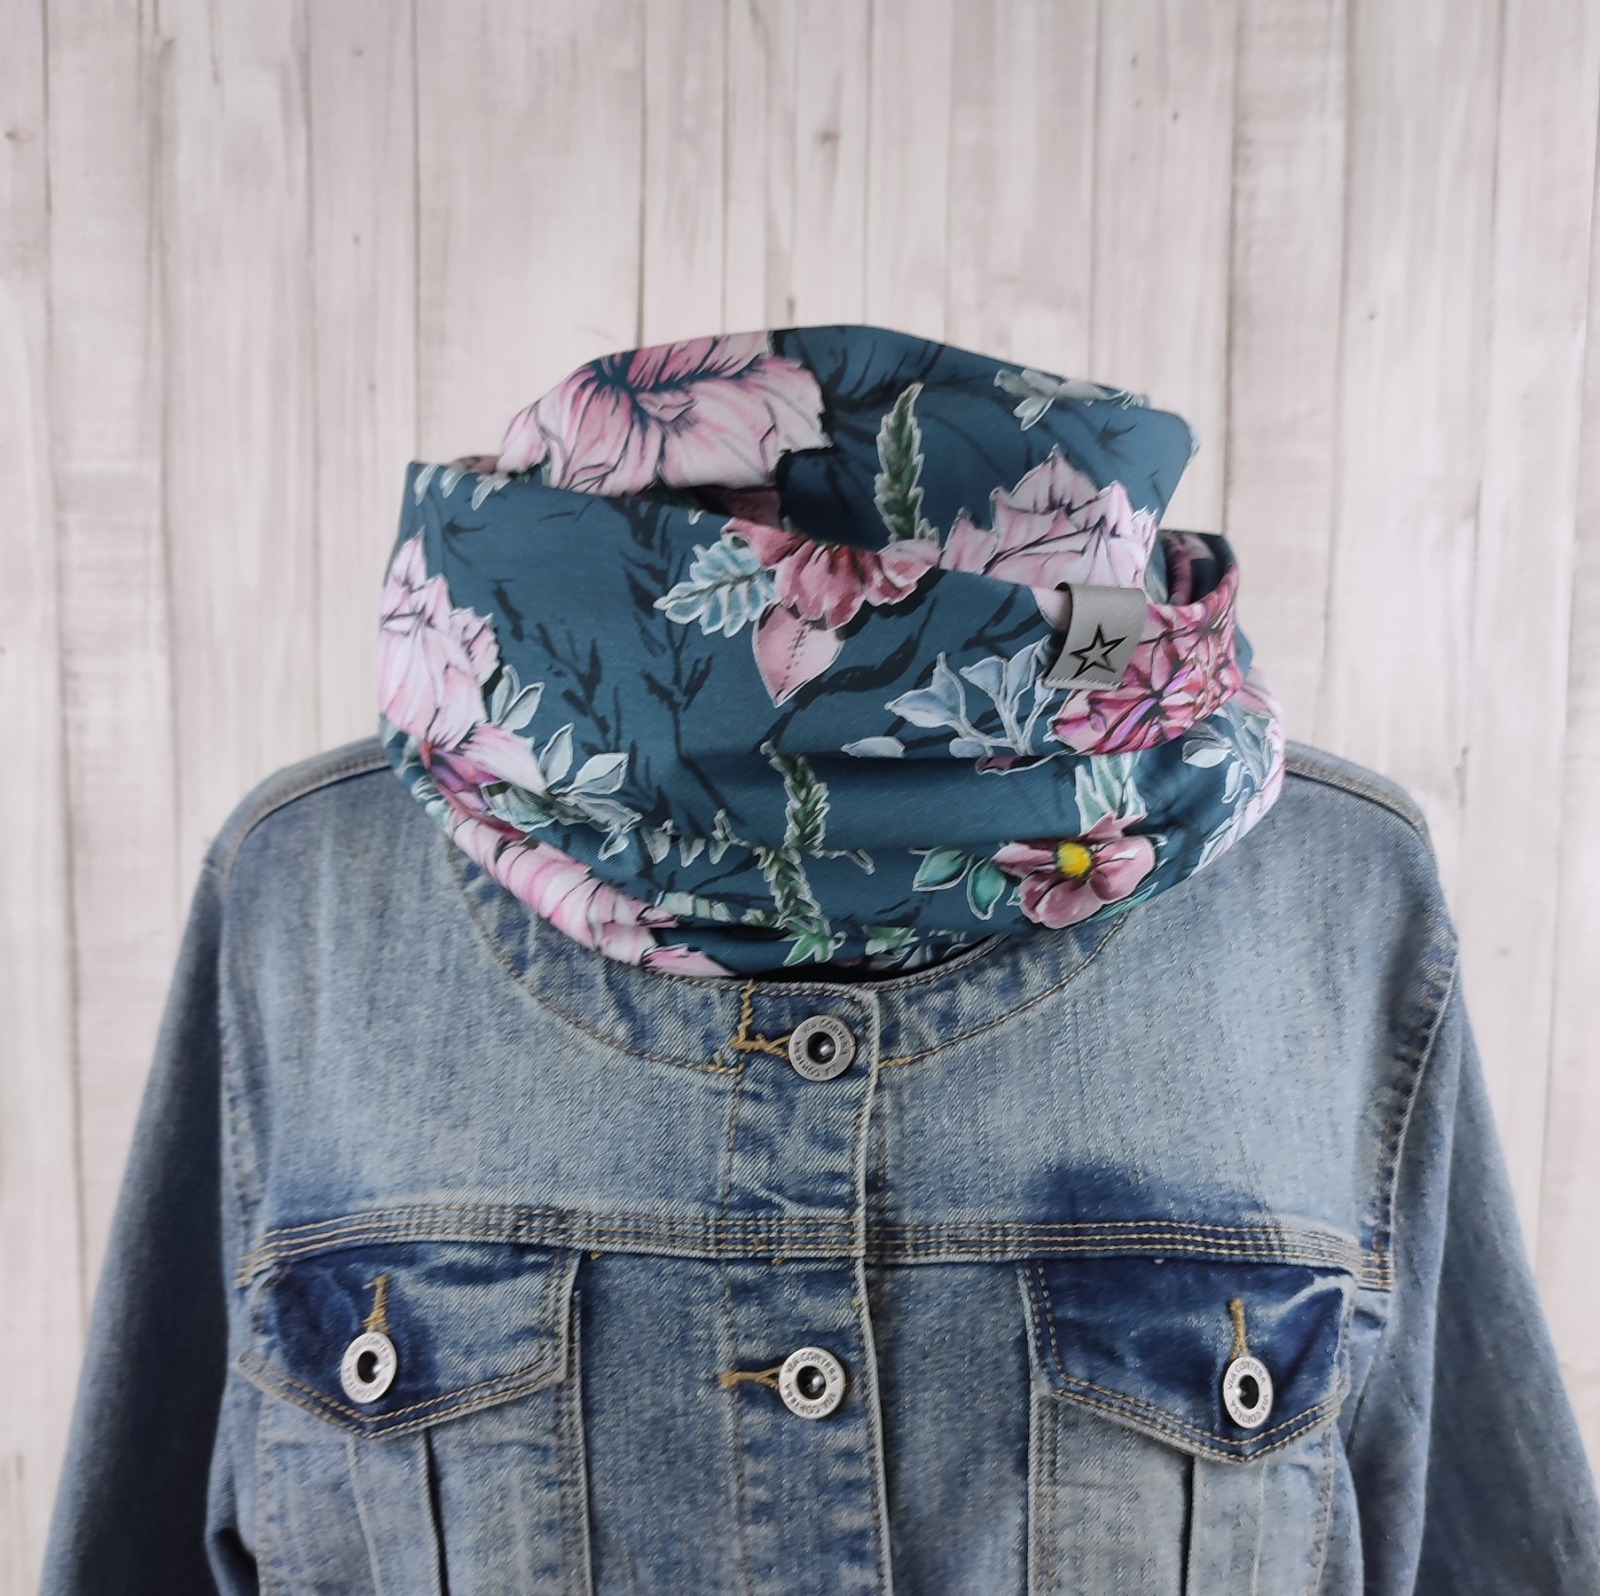 Loop Schlauchschal jeansblau mit Blumen in Wasserfarben Optik - Schal für Damen aus Jersey